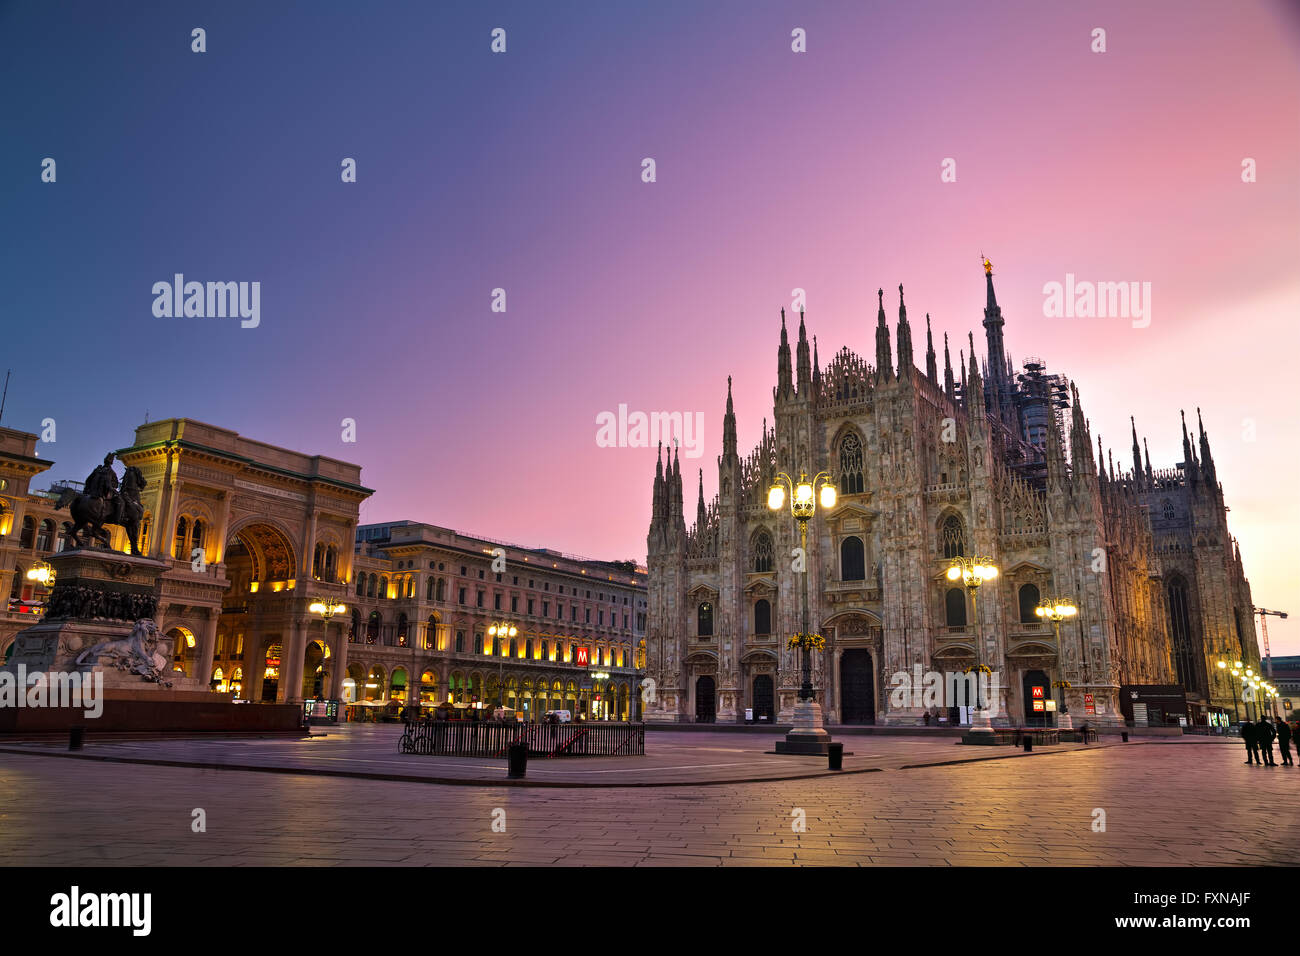 Mailand, Italien - 25 NOVEMBER: Dom mit den Menschen in den frühen Morgenstunden am 25. November 2015 in Mailand, Italien. Stockfoto